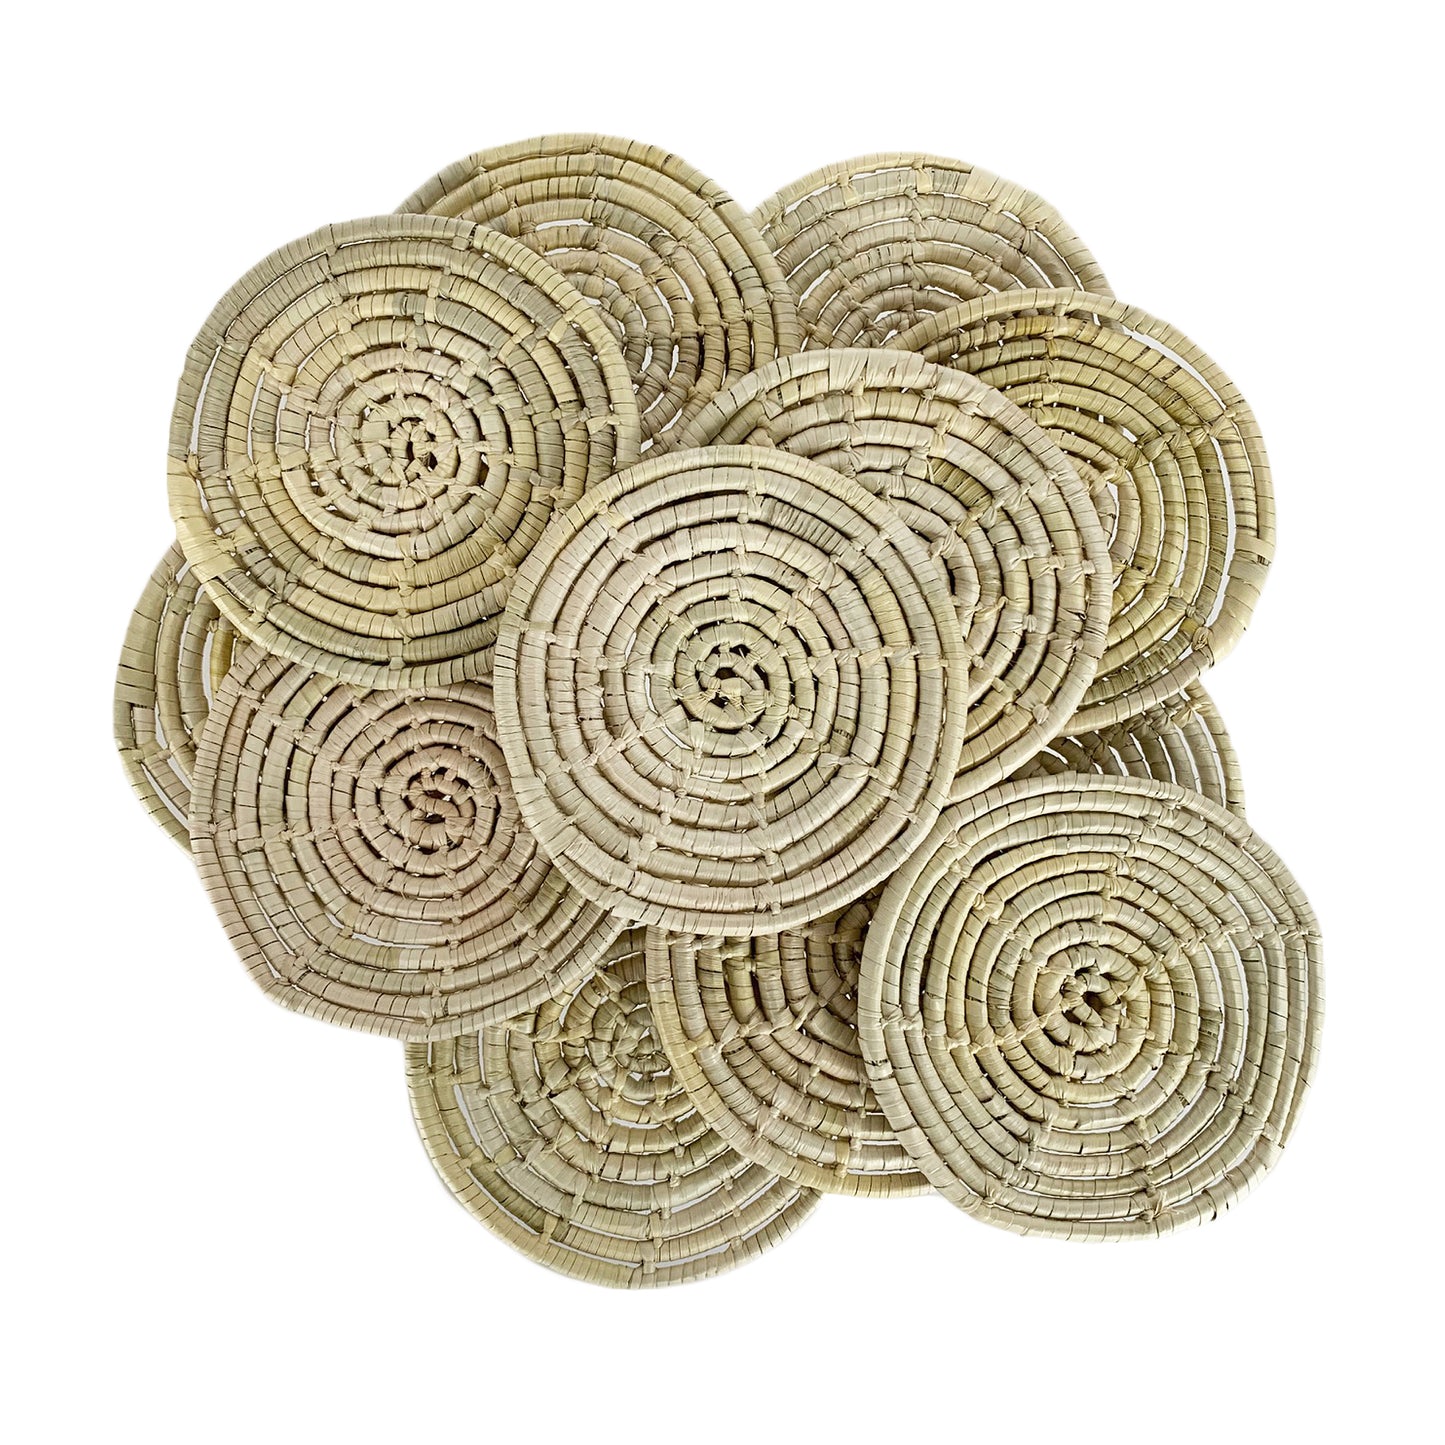 Posavasos de fibra de palma tejidos a mano de México (se venden individualmente)